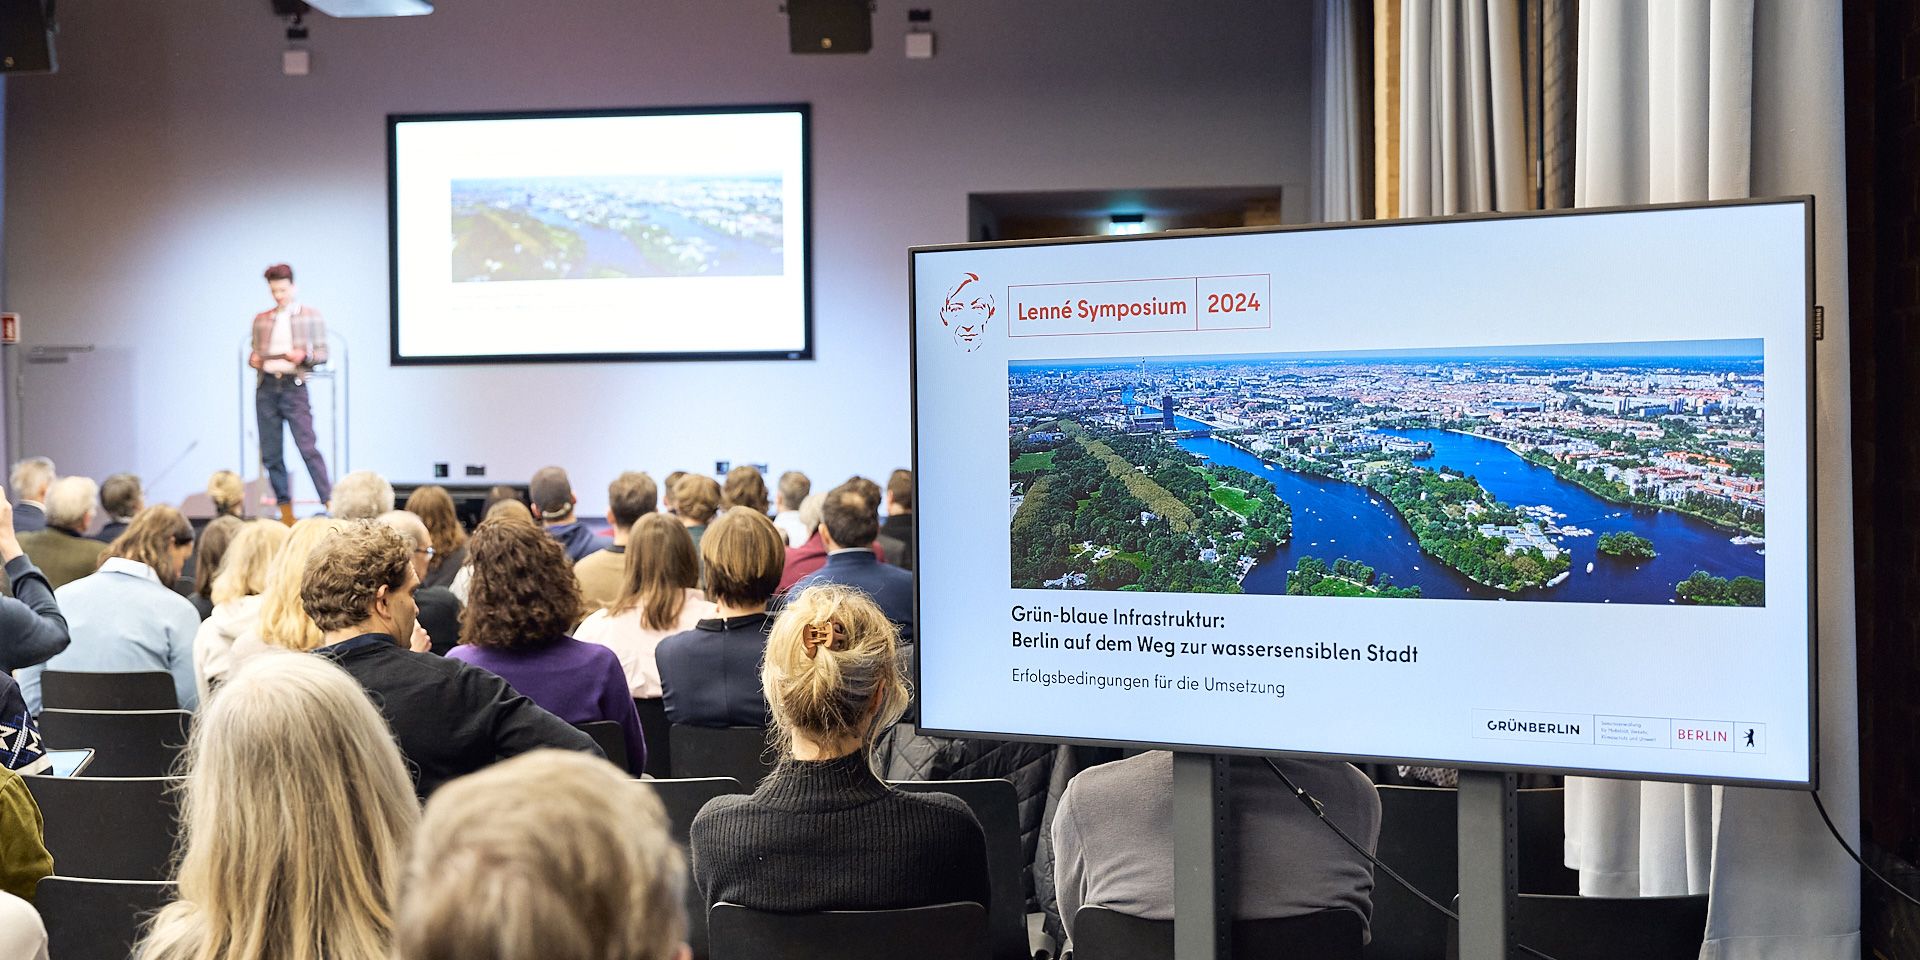 Lenné-Symposium 2024 „Grün-blaue Infrastruktur: Berlin auf dem Weg zur wassersensiblen Stadt. Erfolgsbedingungen für die Umsetzung“ 